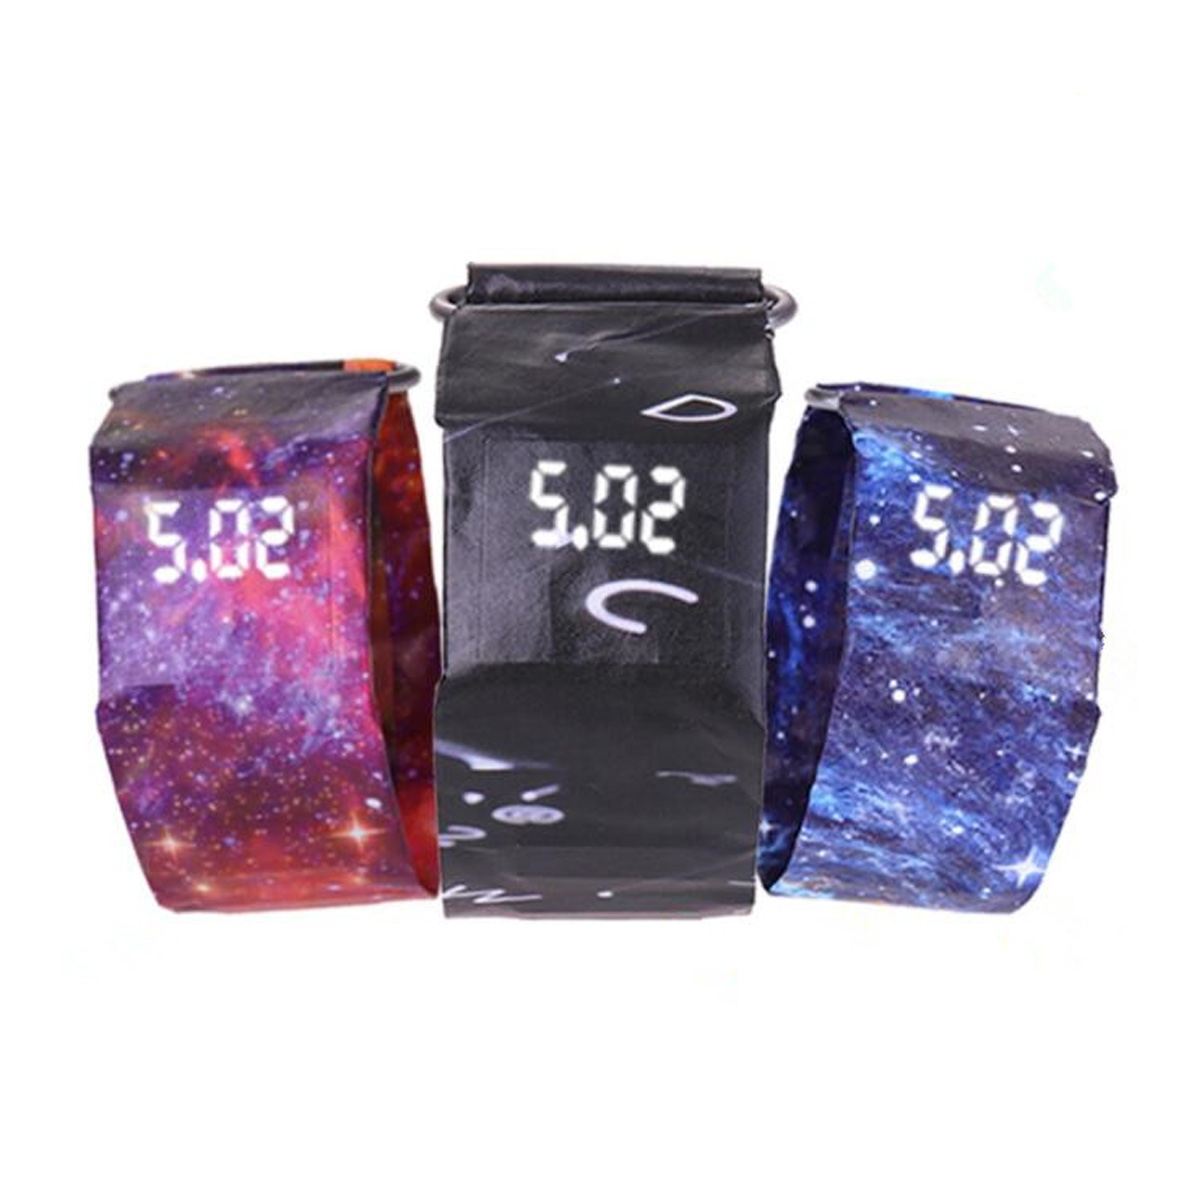 GL-ELY1012 Waterproof Paper Wrist Watch